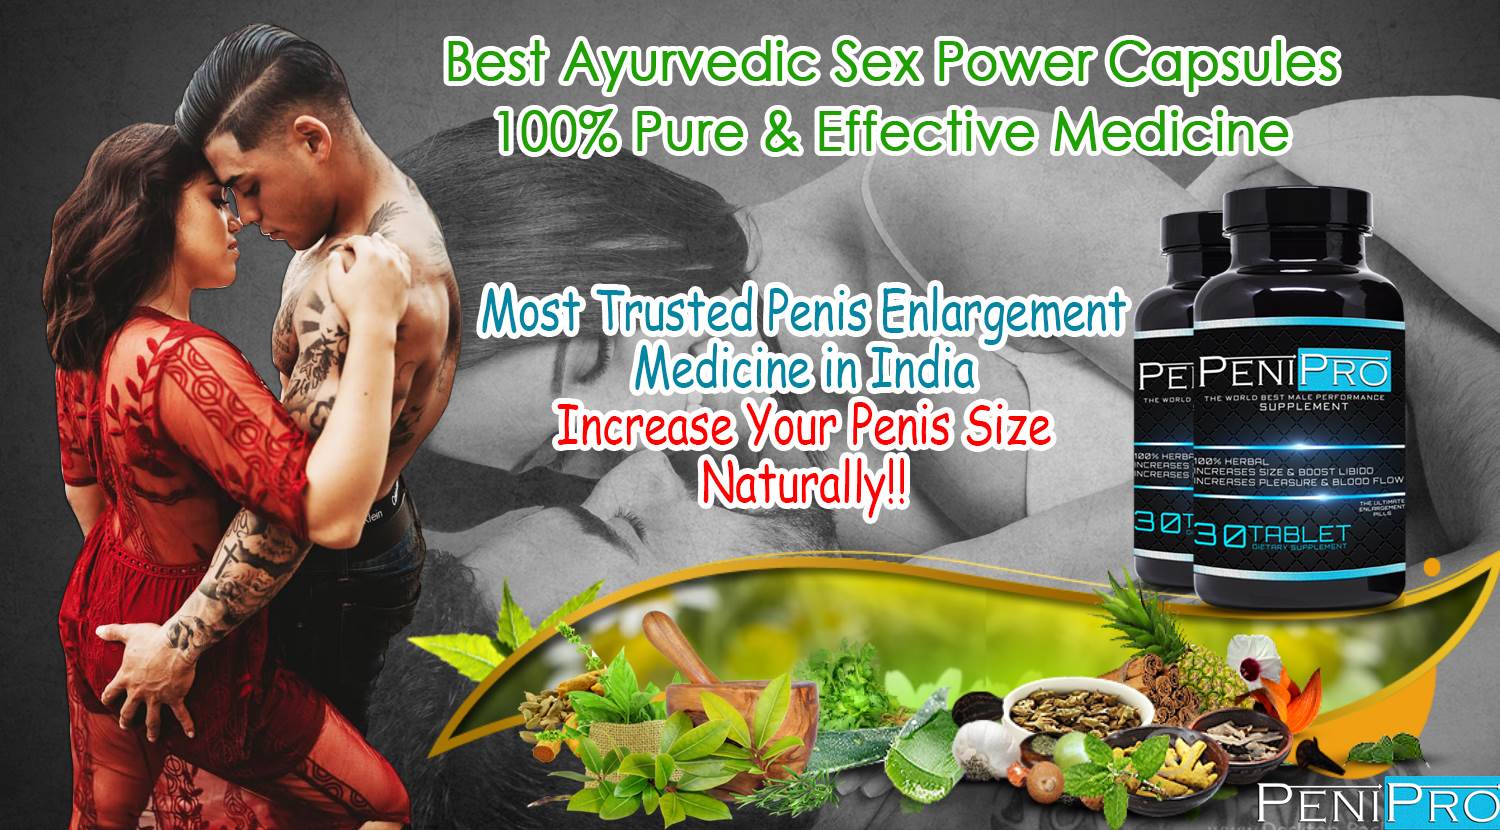 ayurvedic-medicine.jpg  by sex power capsule